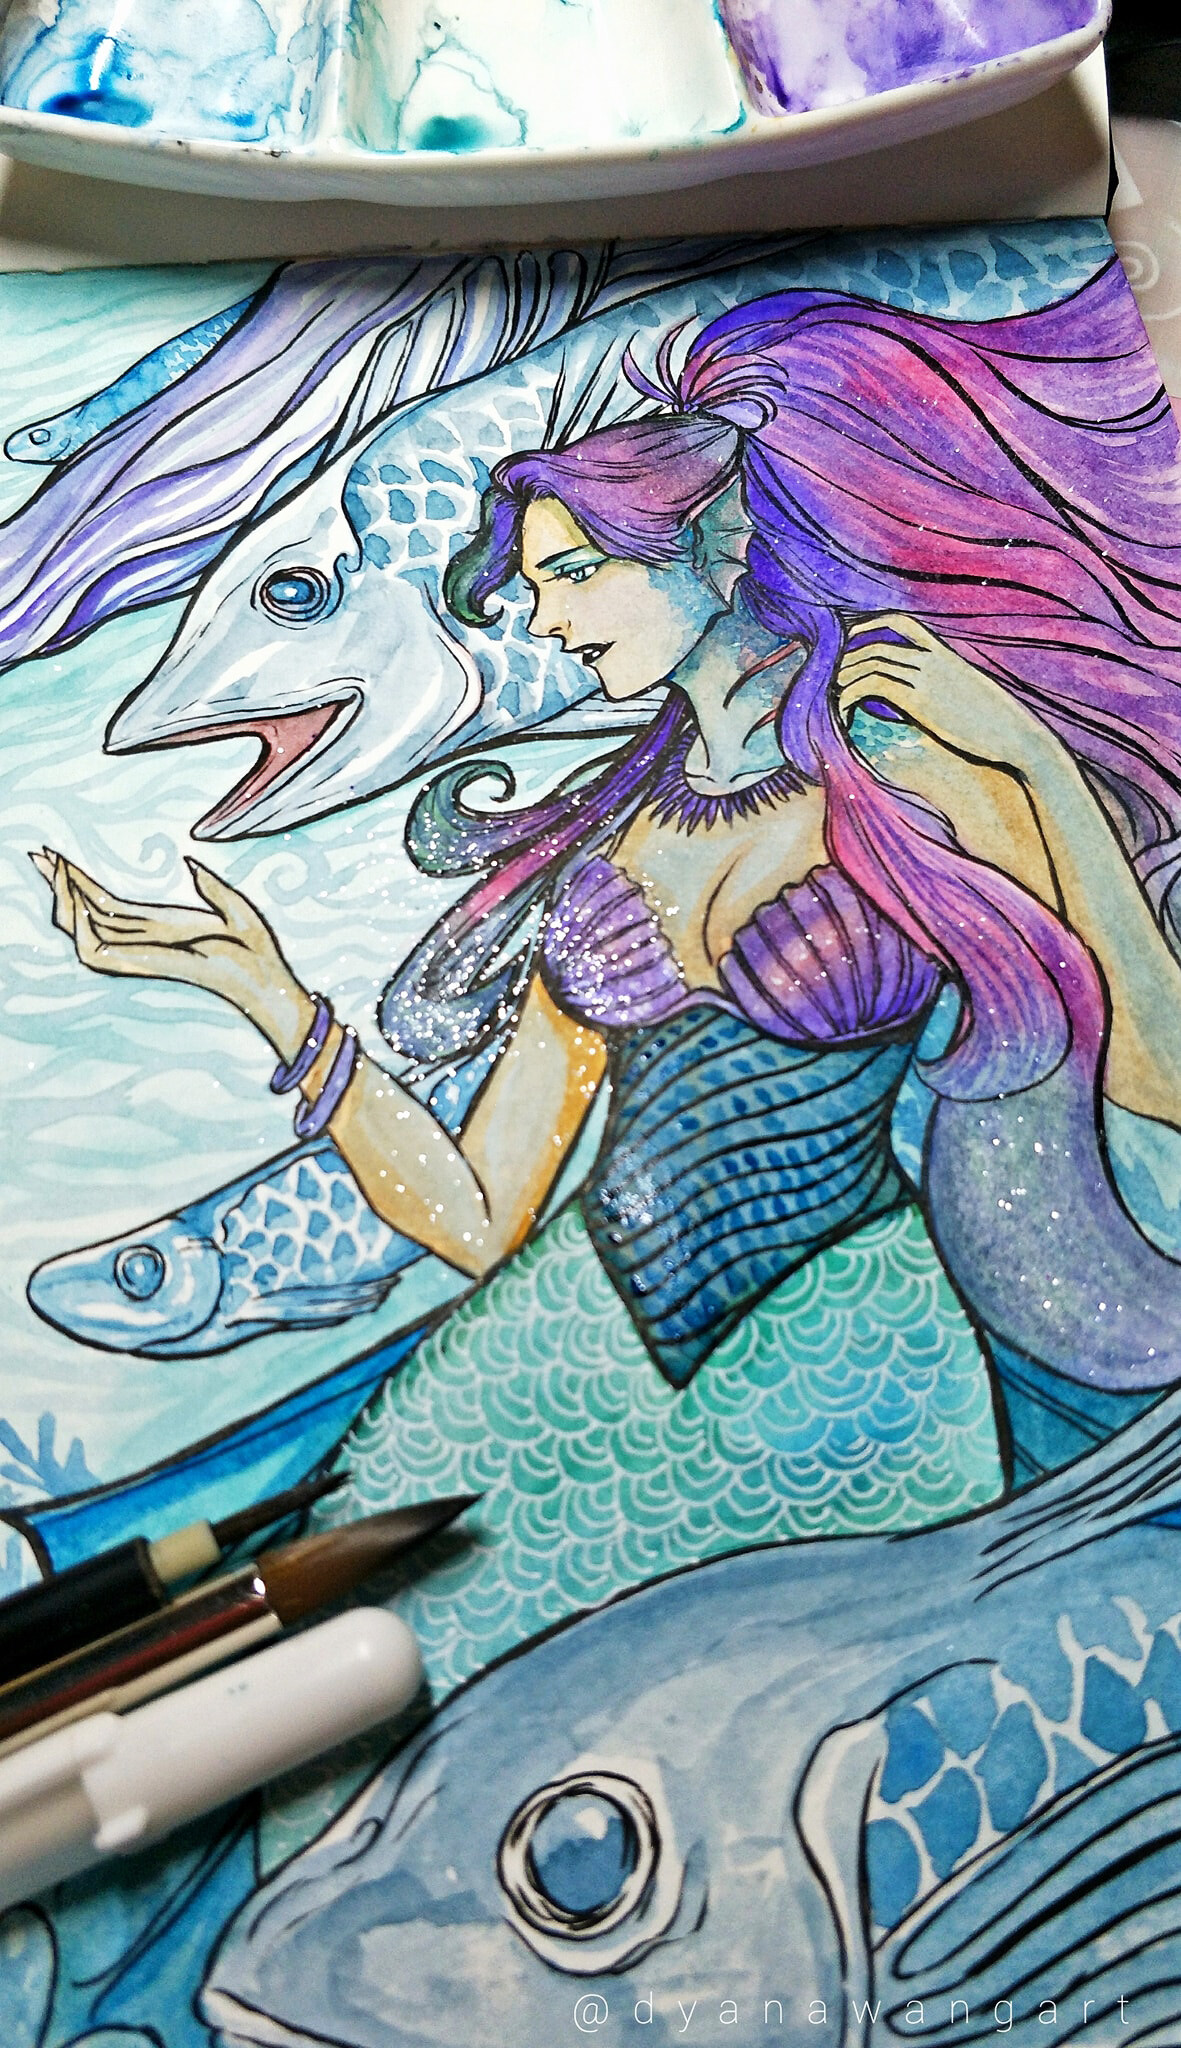 Dyana Wang Purple Mermaid